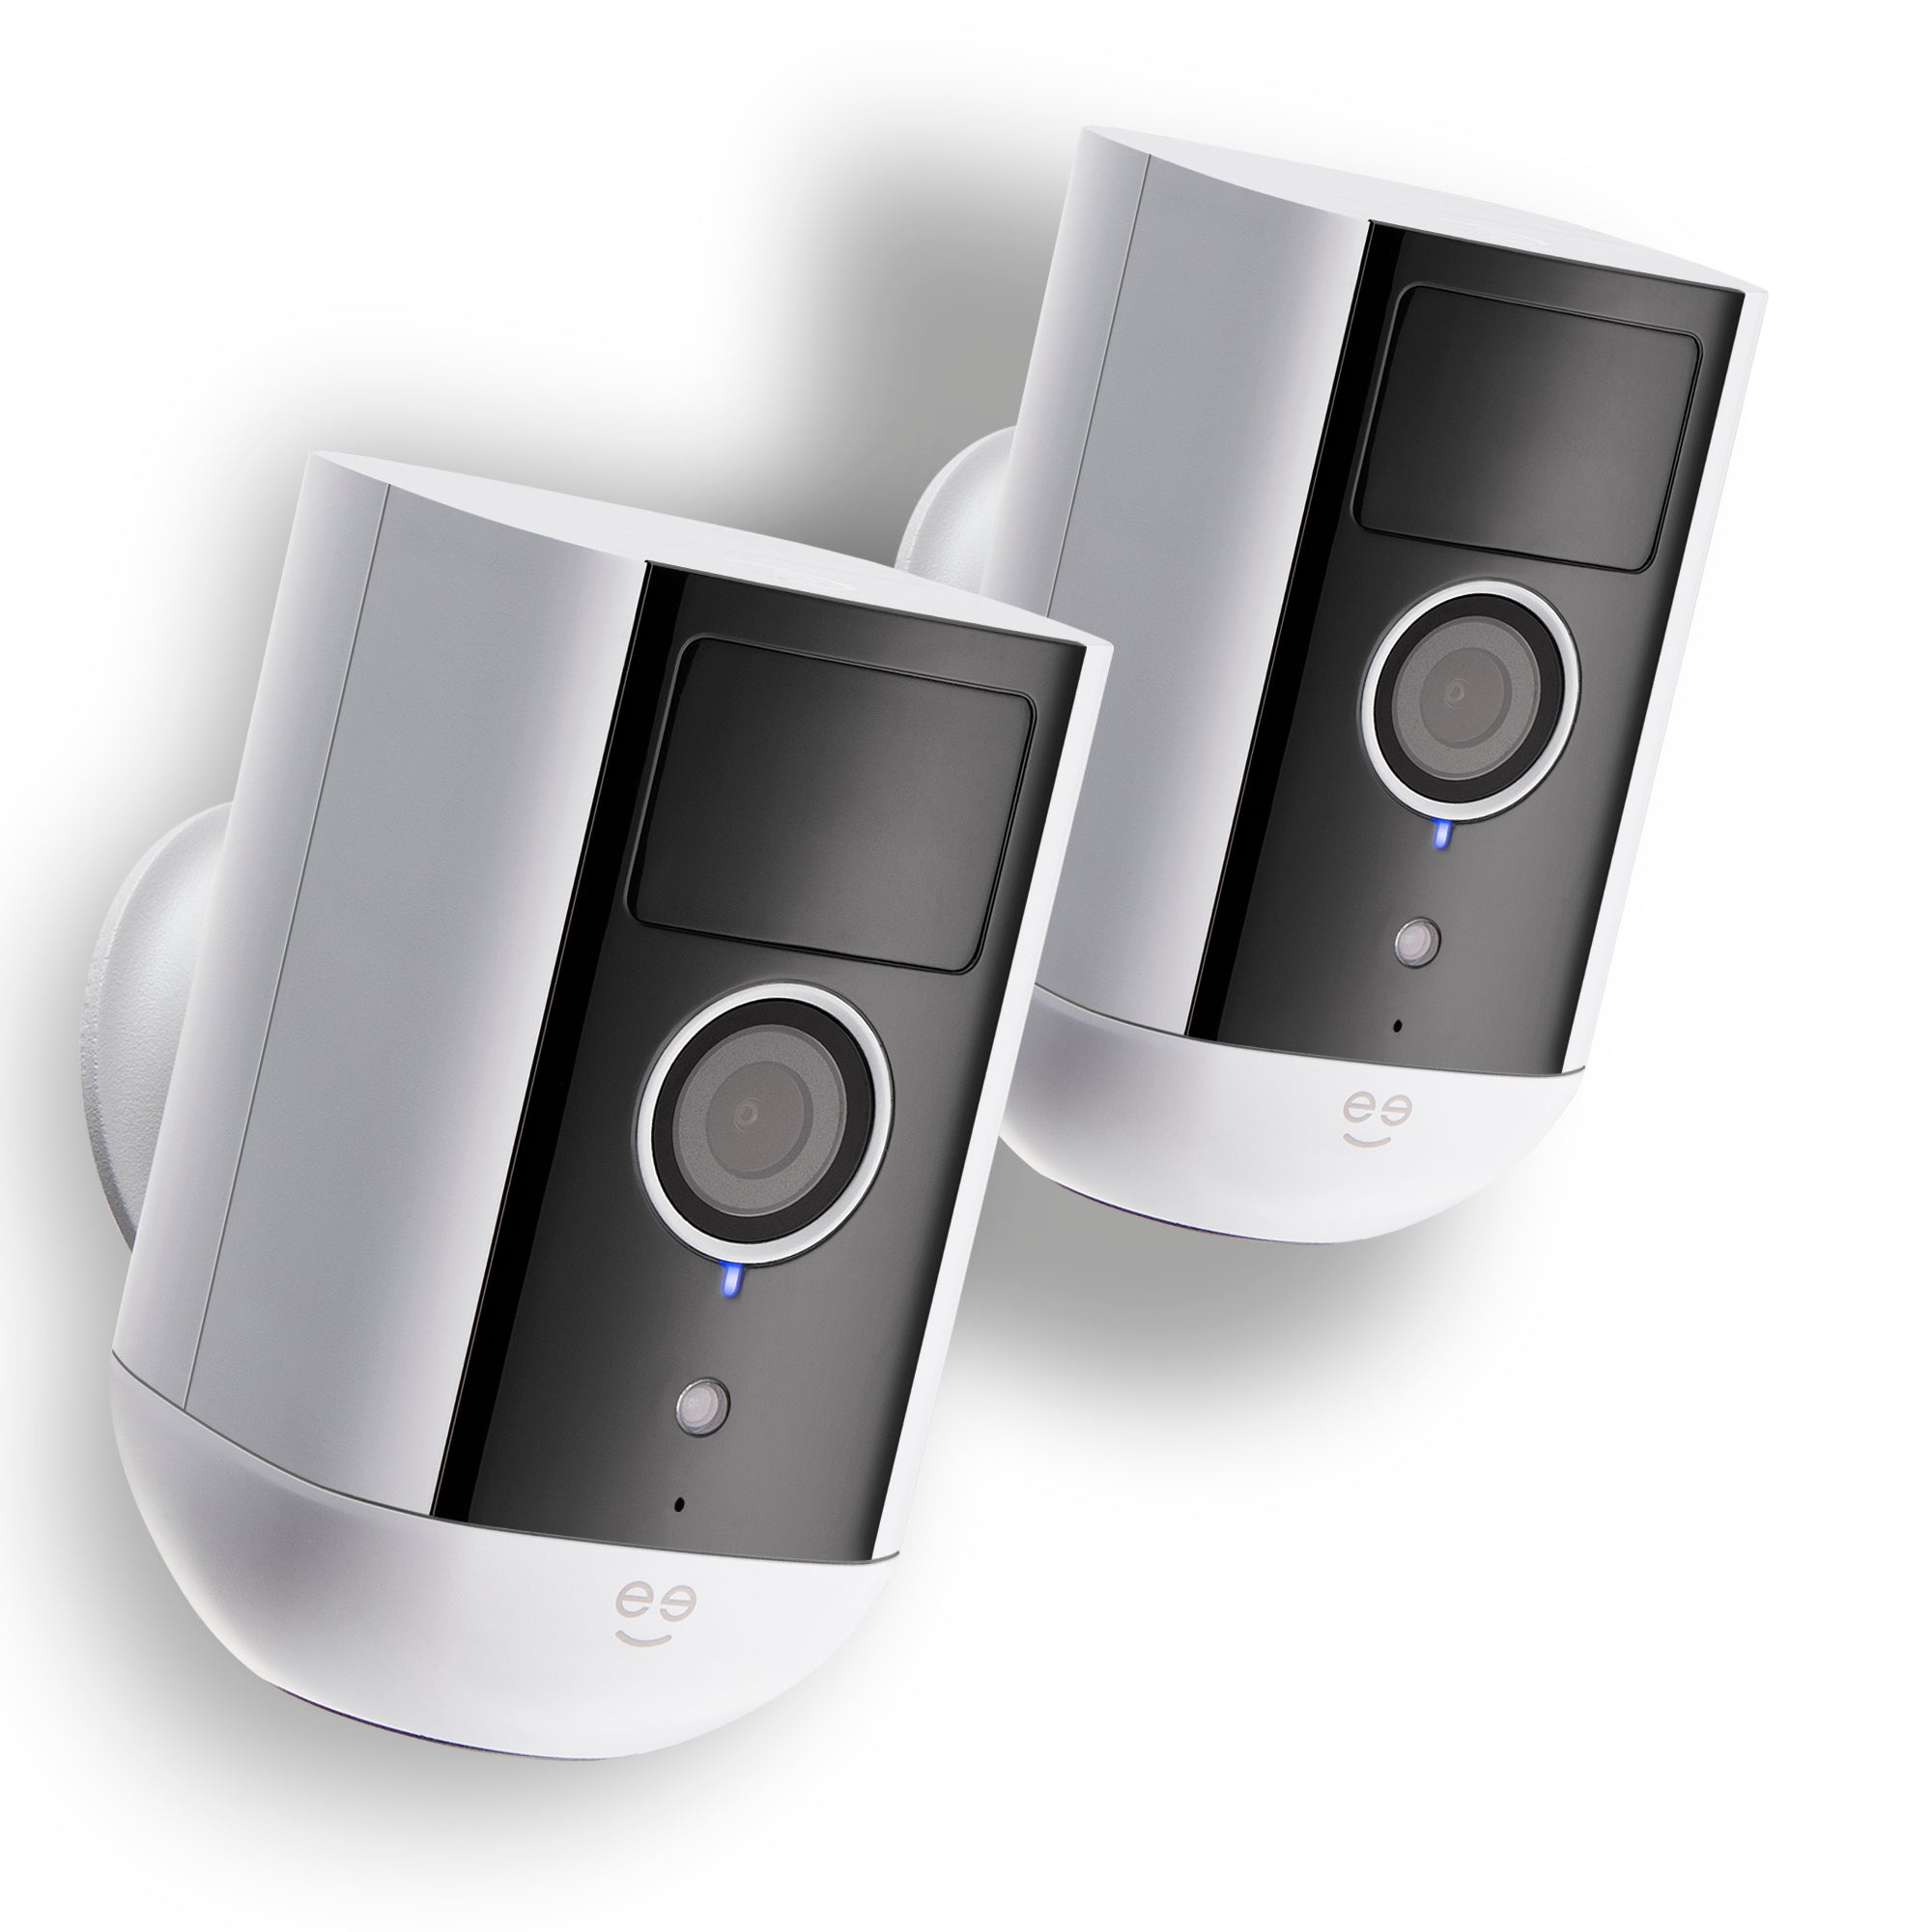 Wireless Smart Home HD Security Cameras, Lights and Doorbells